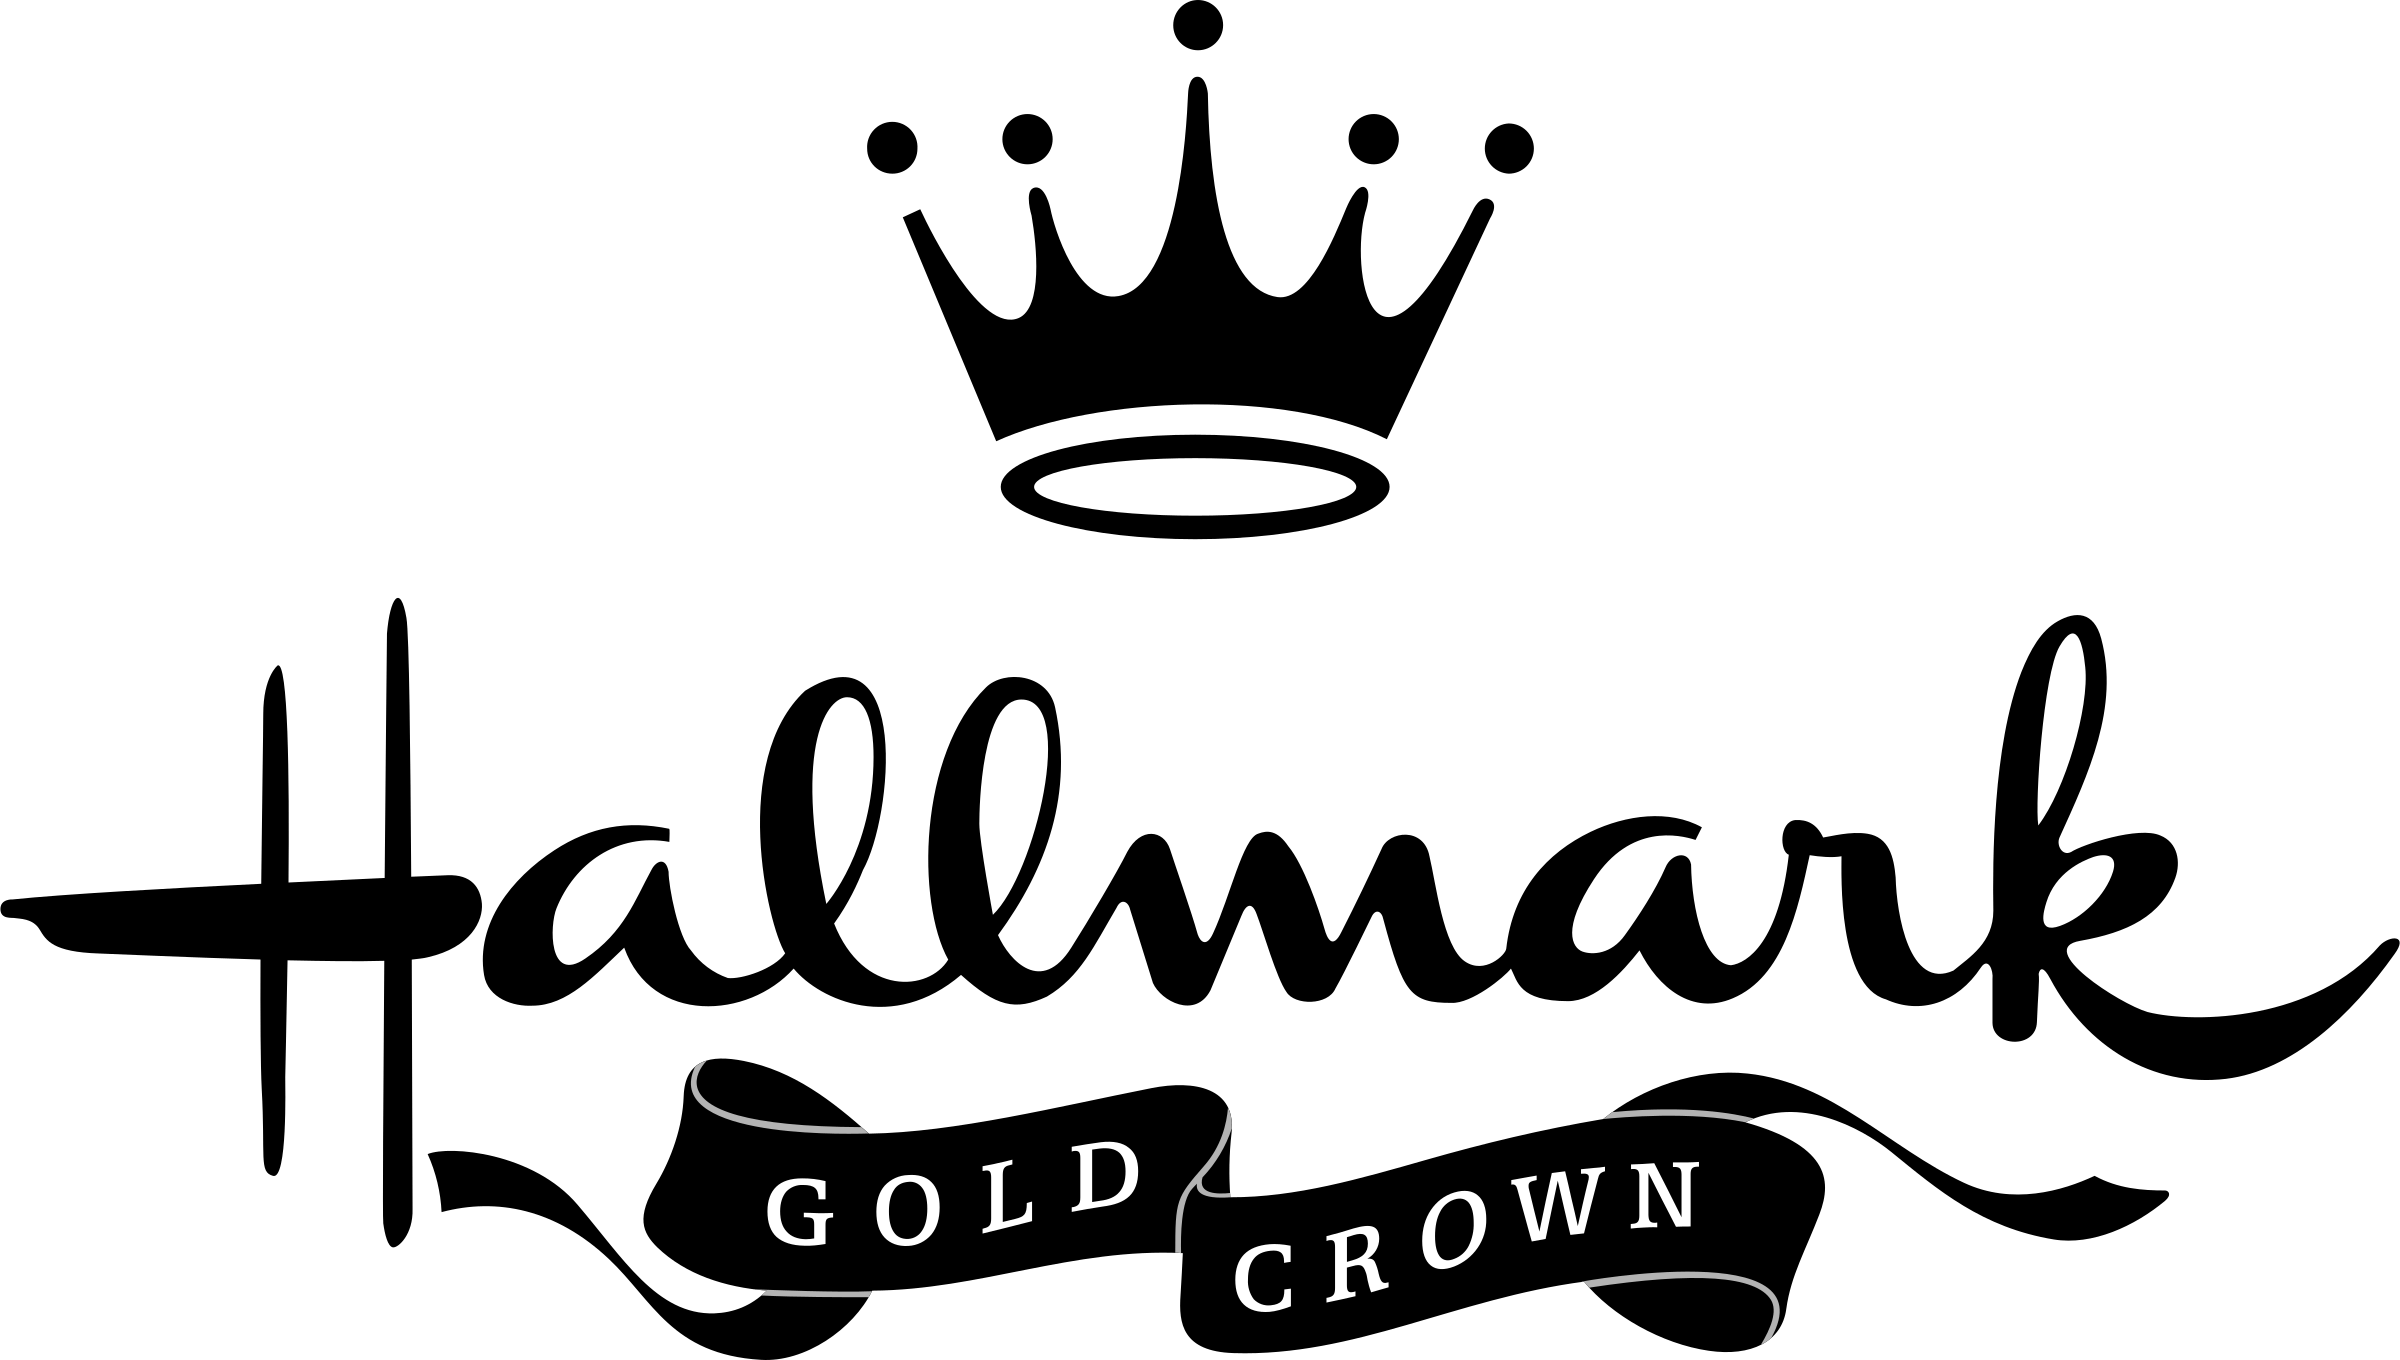 Black and Gold Crown Logo - Hallmark Gold Crown Logo PNG Transparent & SVG Vector